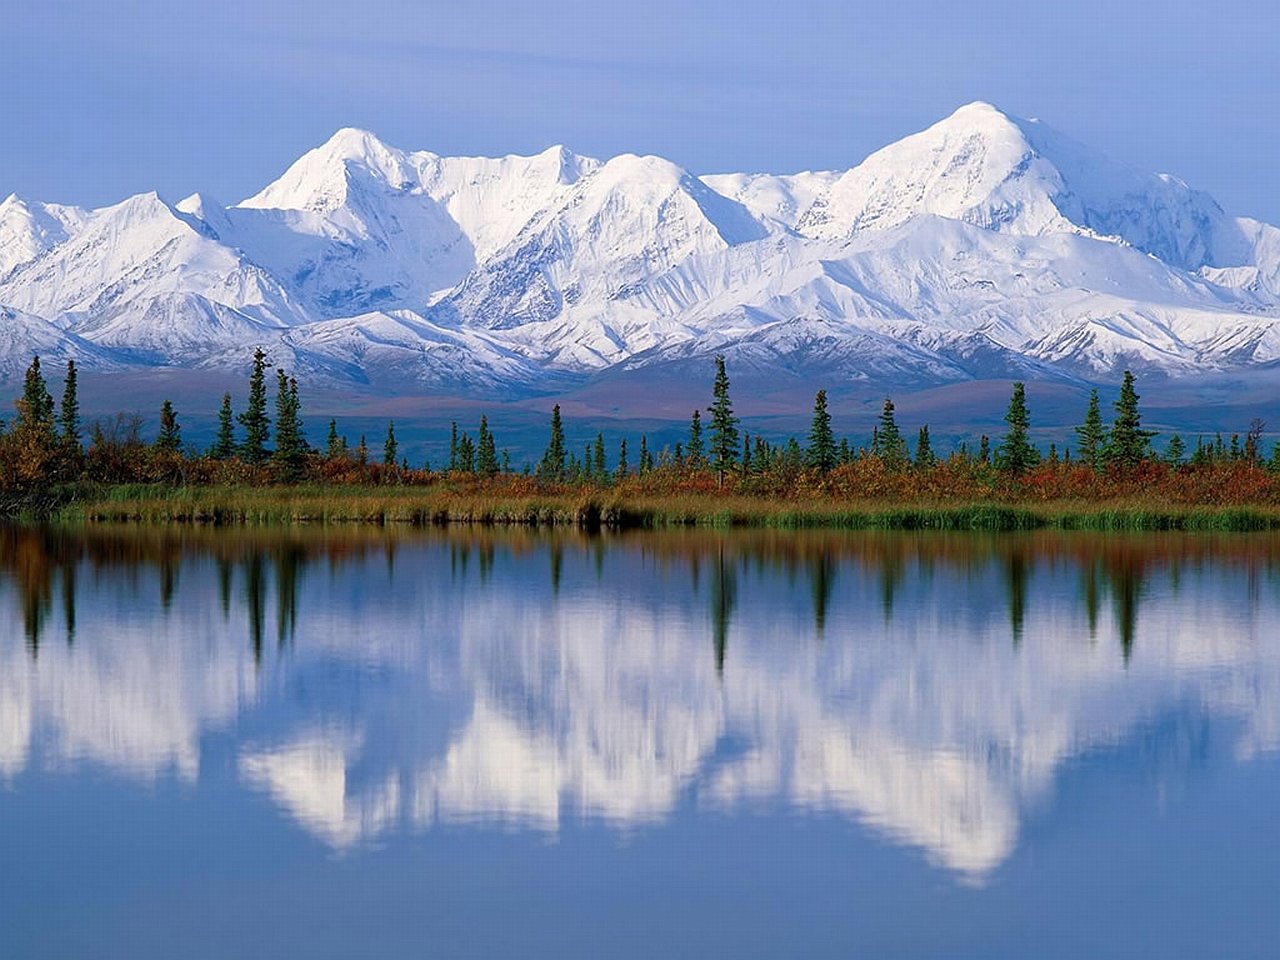 Национальный парк Денали Аляска. Северная Америка Аляска. Национальный парк Денали, штат Аляска. Кордильеры Аляски. Большое разнообразие природы северной америки